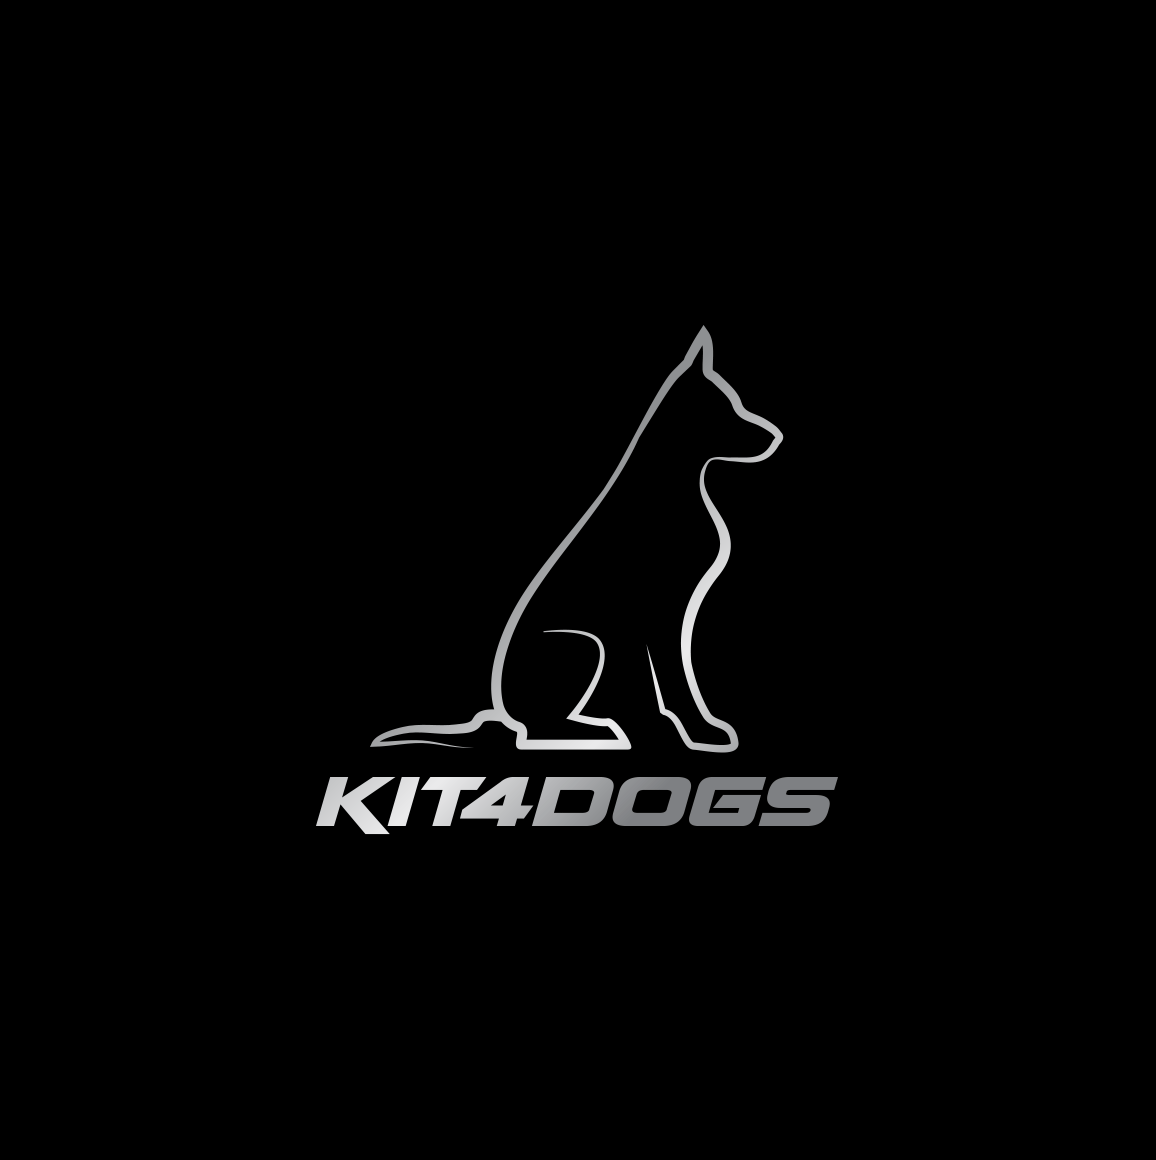 KIT4DOGS - Kit4dogs